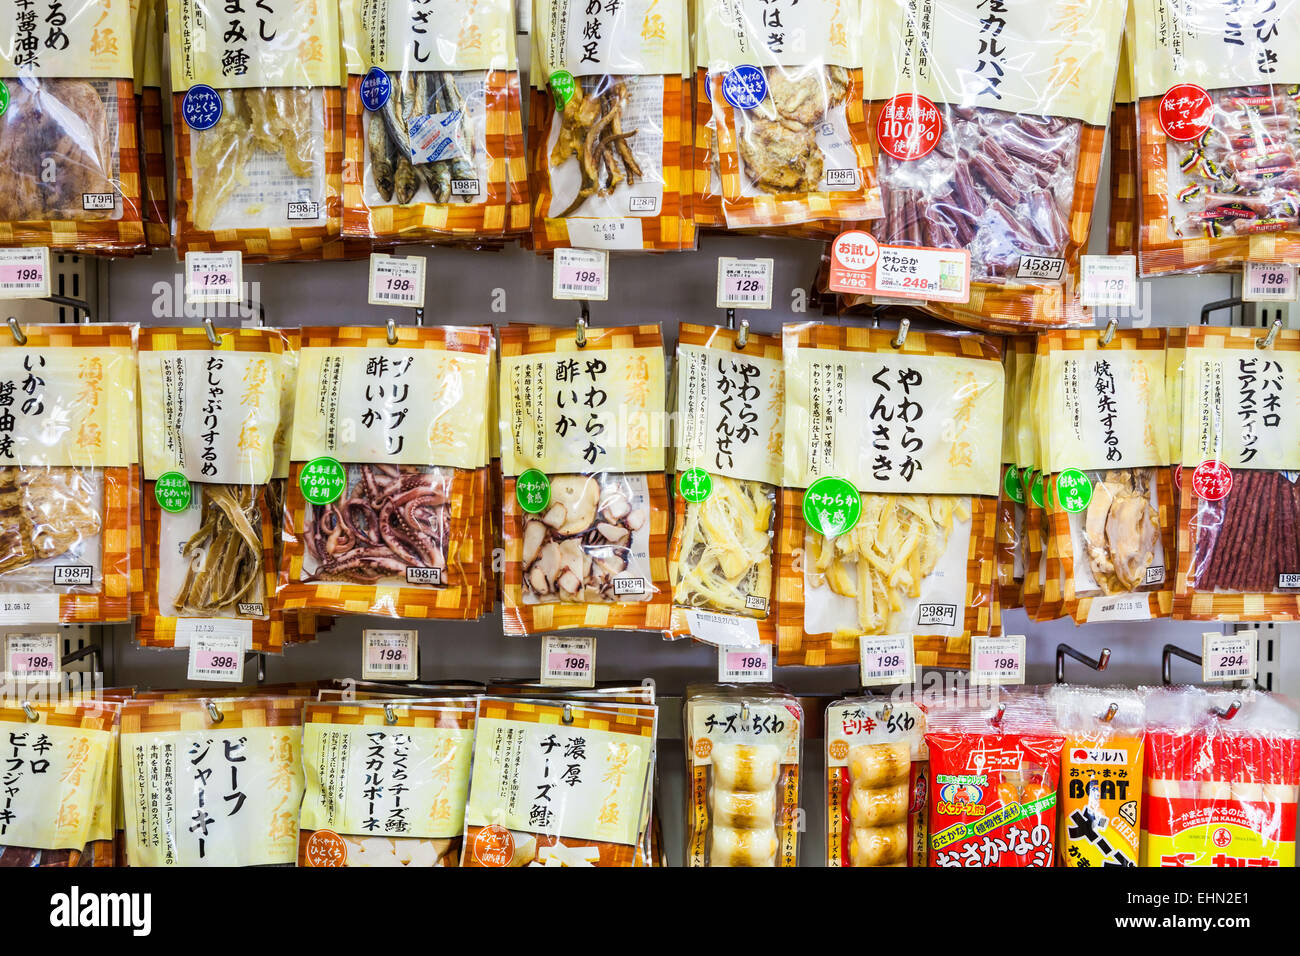 Seca en bolsas en un supermercado de comida japonesa. Foto de stock